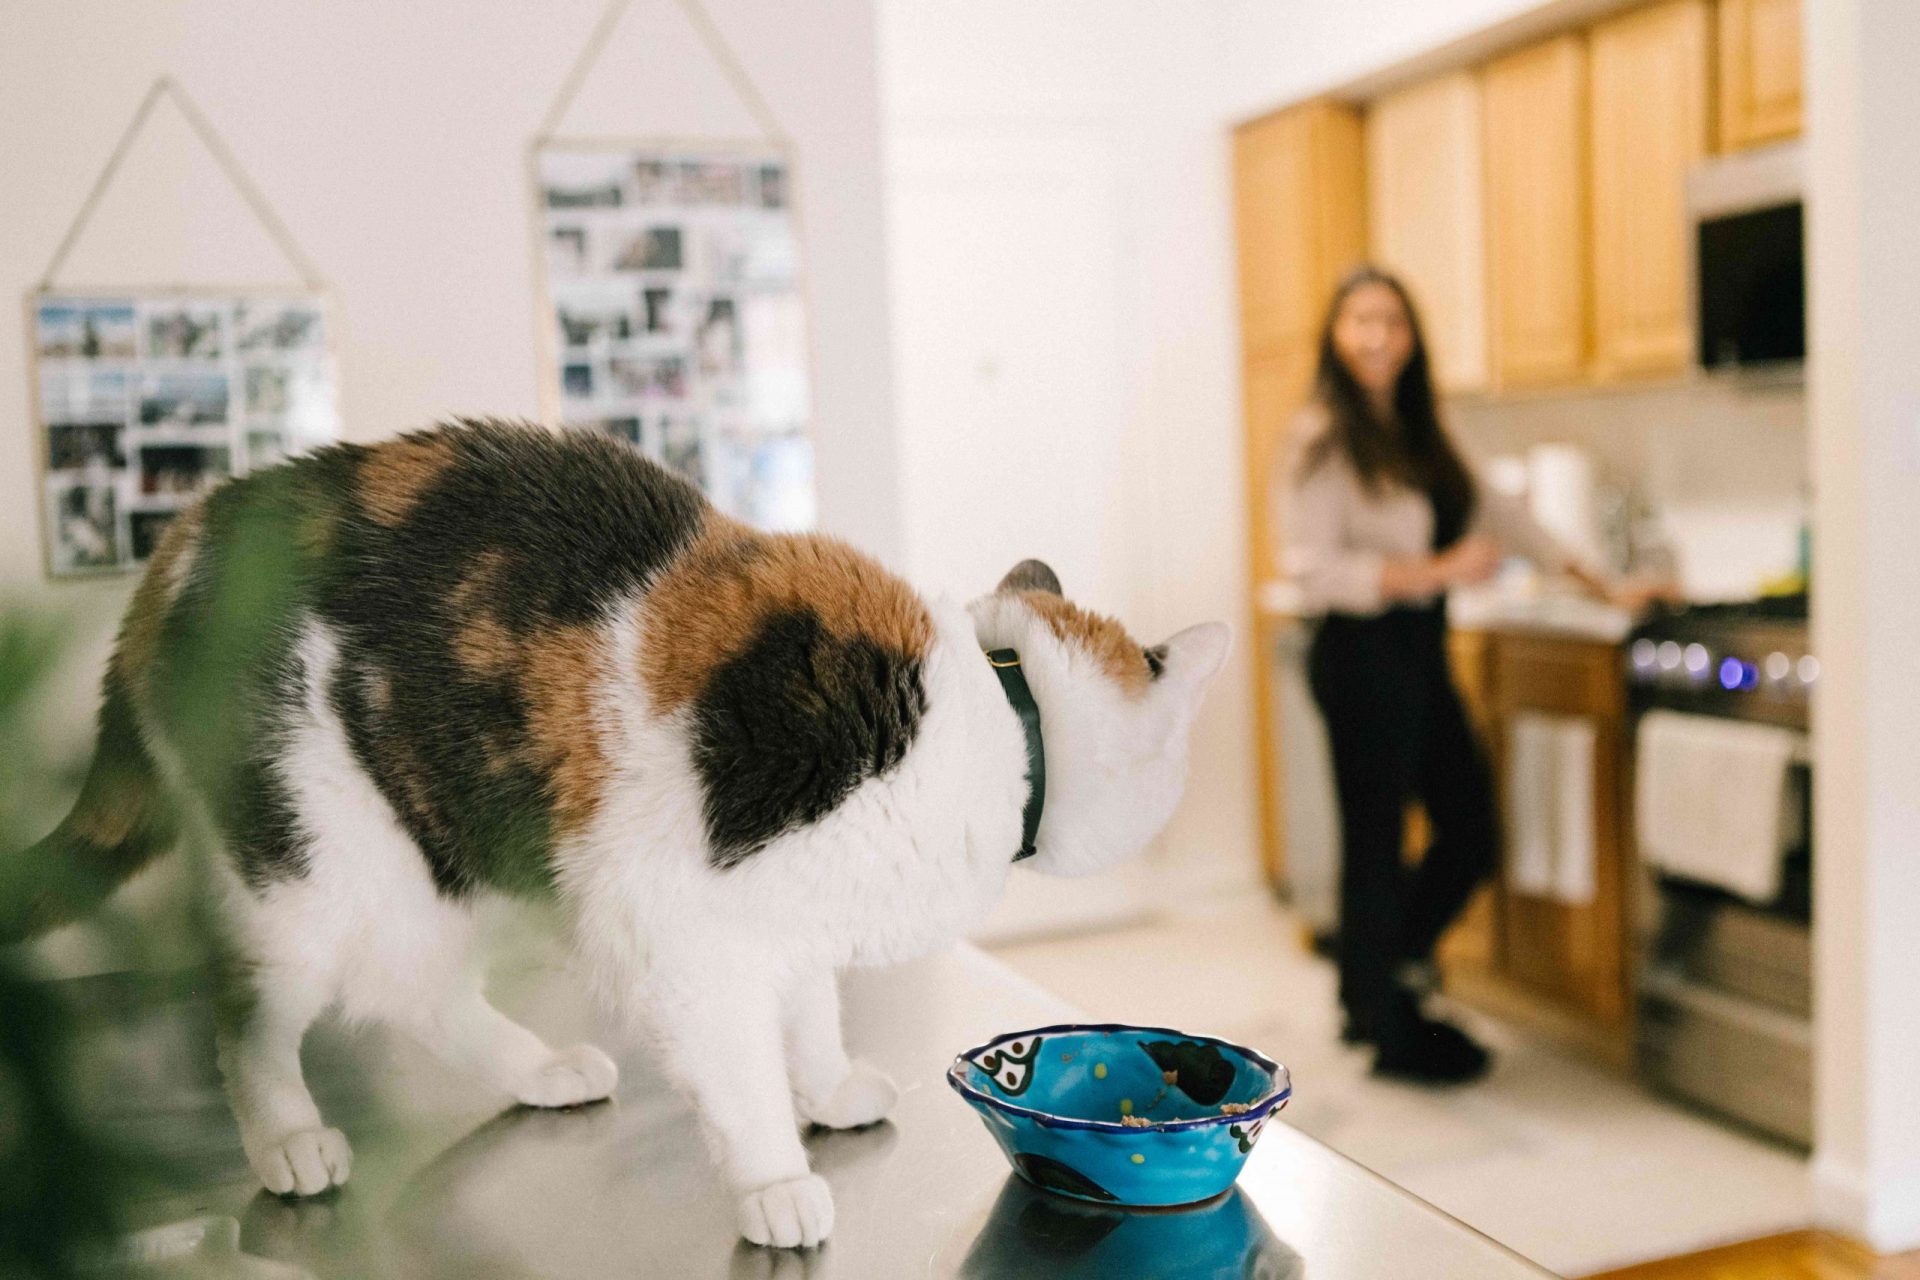 el gato se posa en la mesa junto al cuenco de comida vacío y mira fijamente a su dueño en la distancia